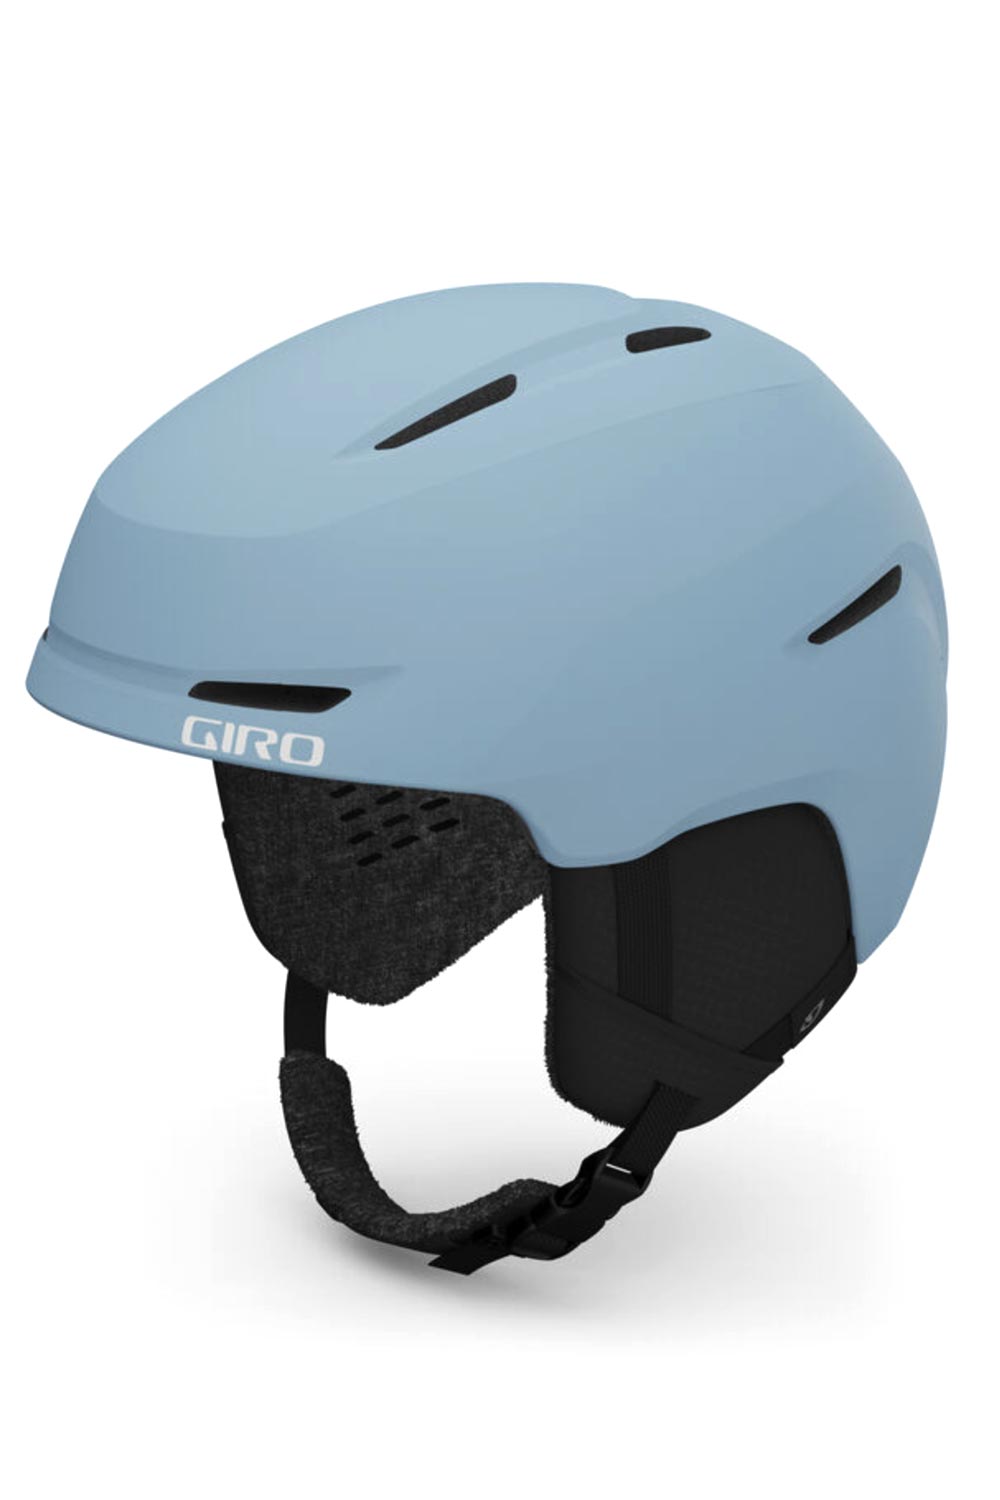 Kids' Giro Spur ski helmet, light blue